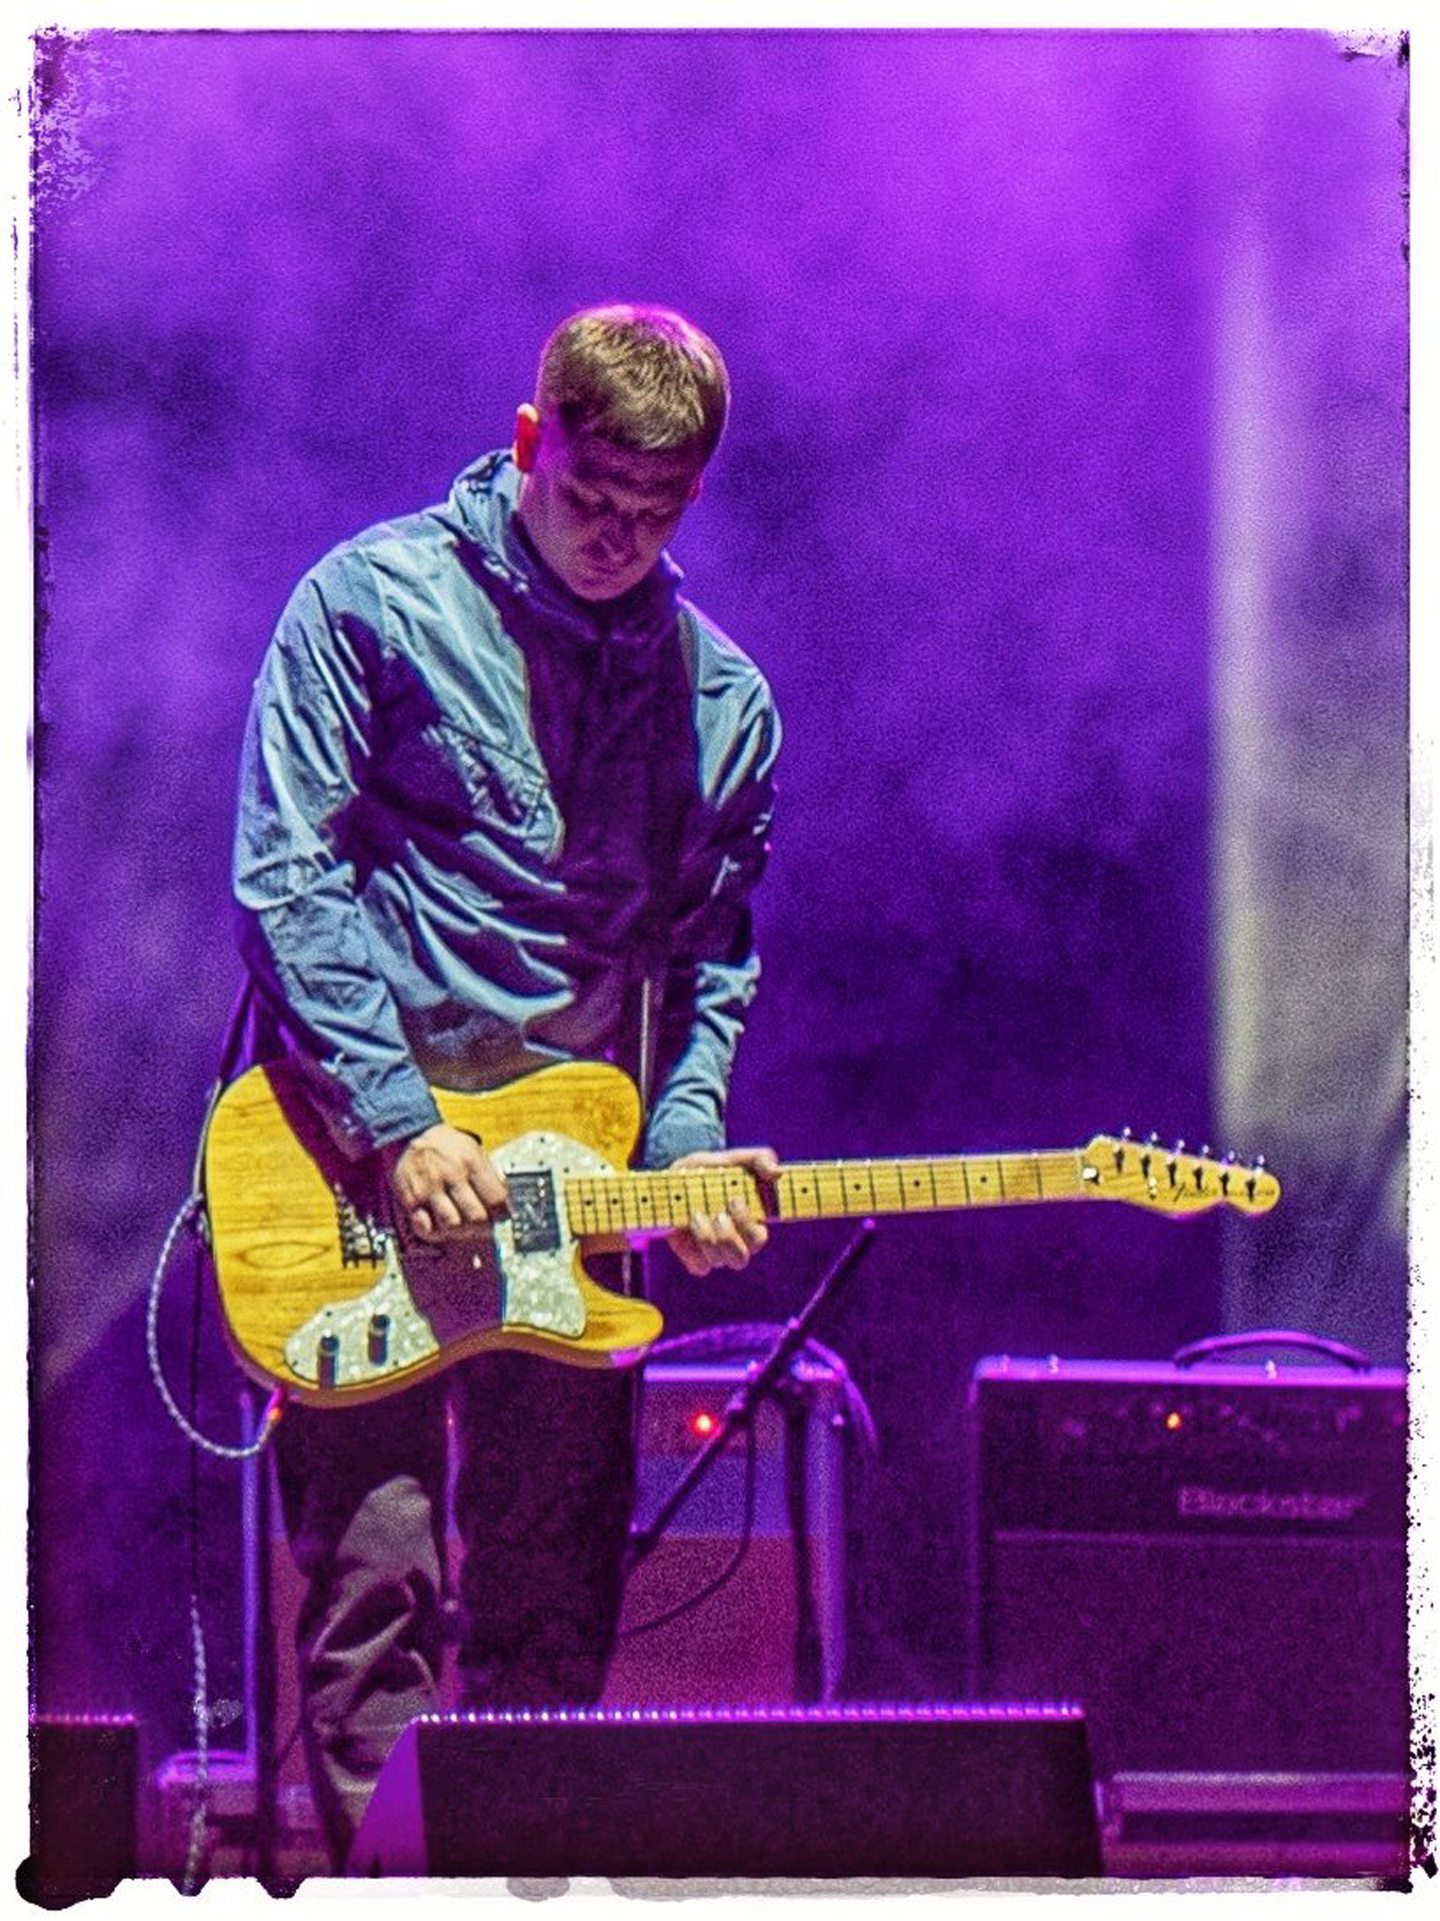 Skylights guitarist on stage.